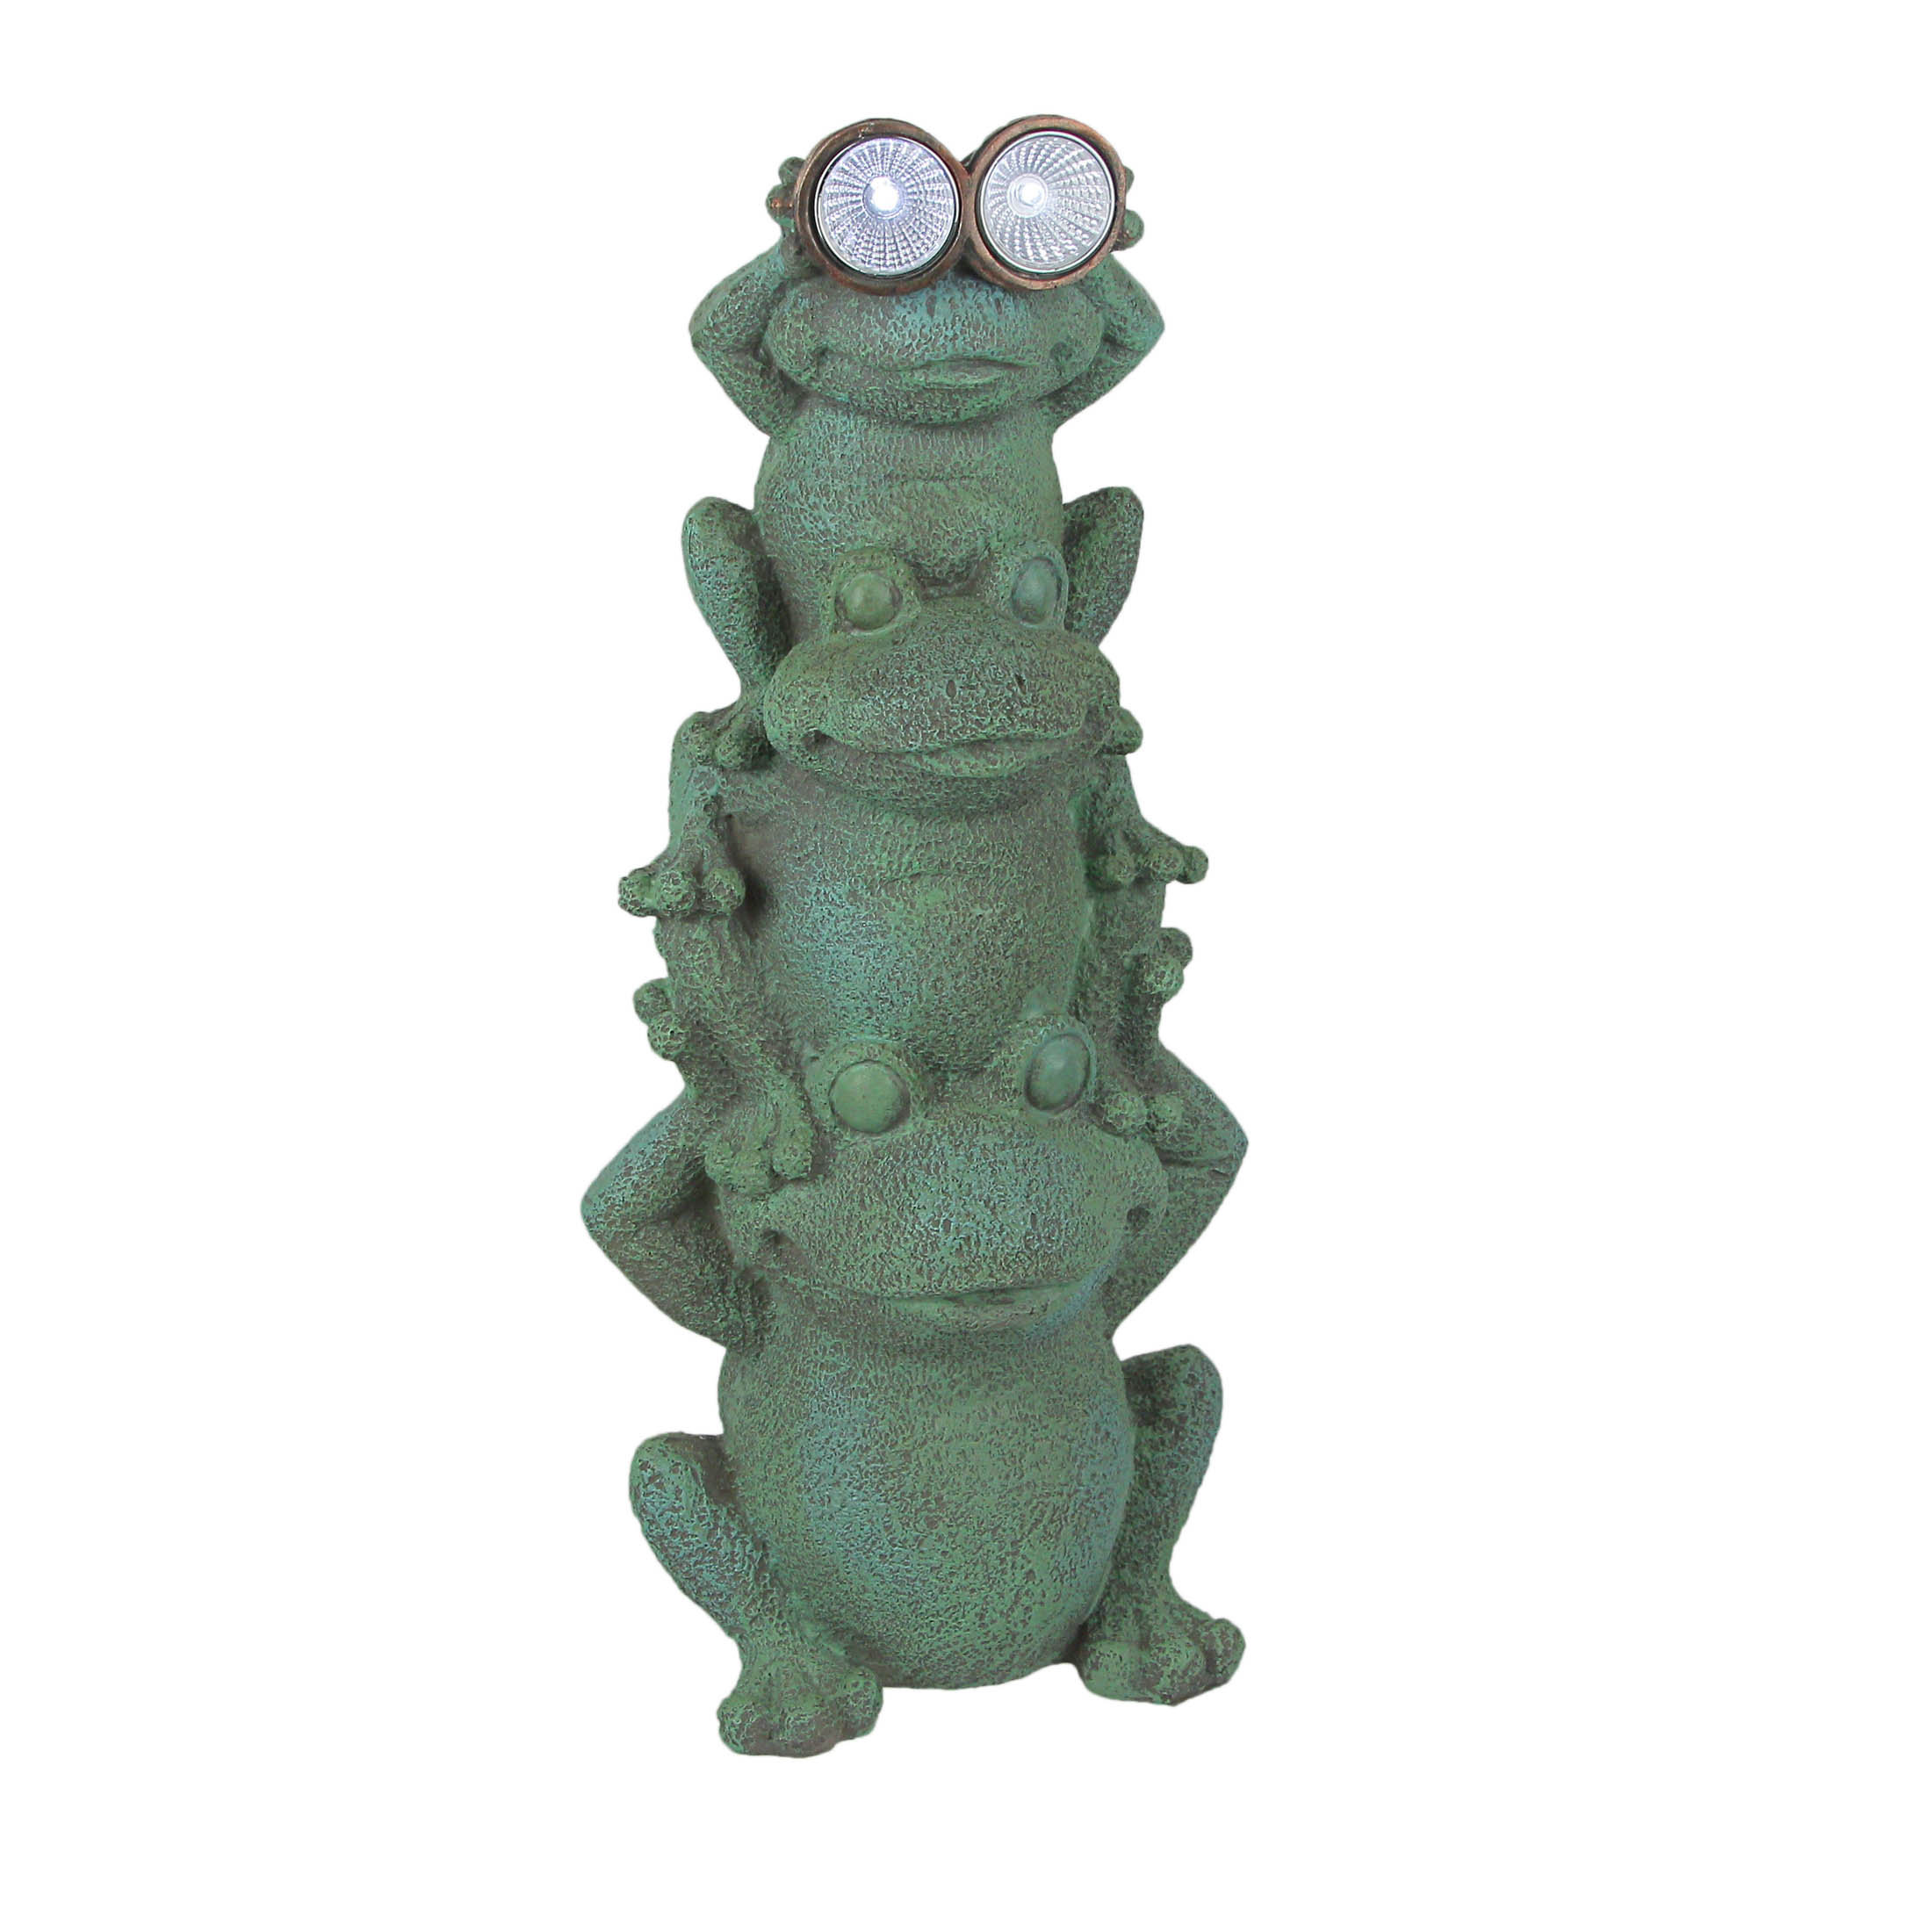 Trinx Defleice Resin Standing Frogs Garden Statue Wayfair 9168